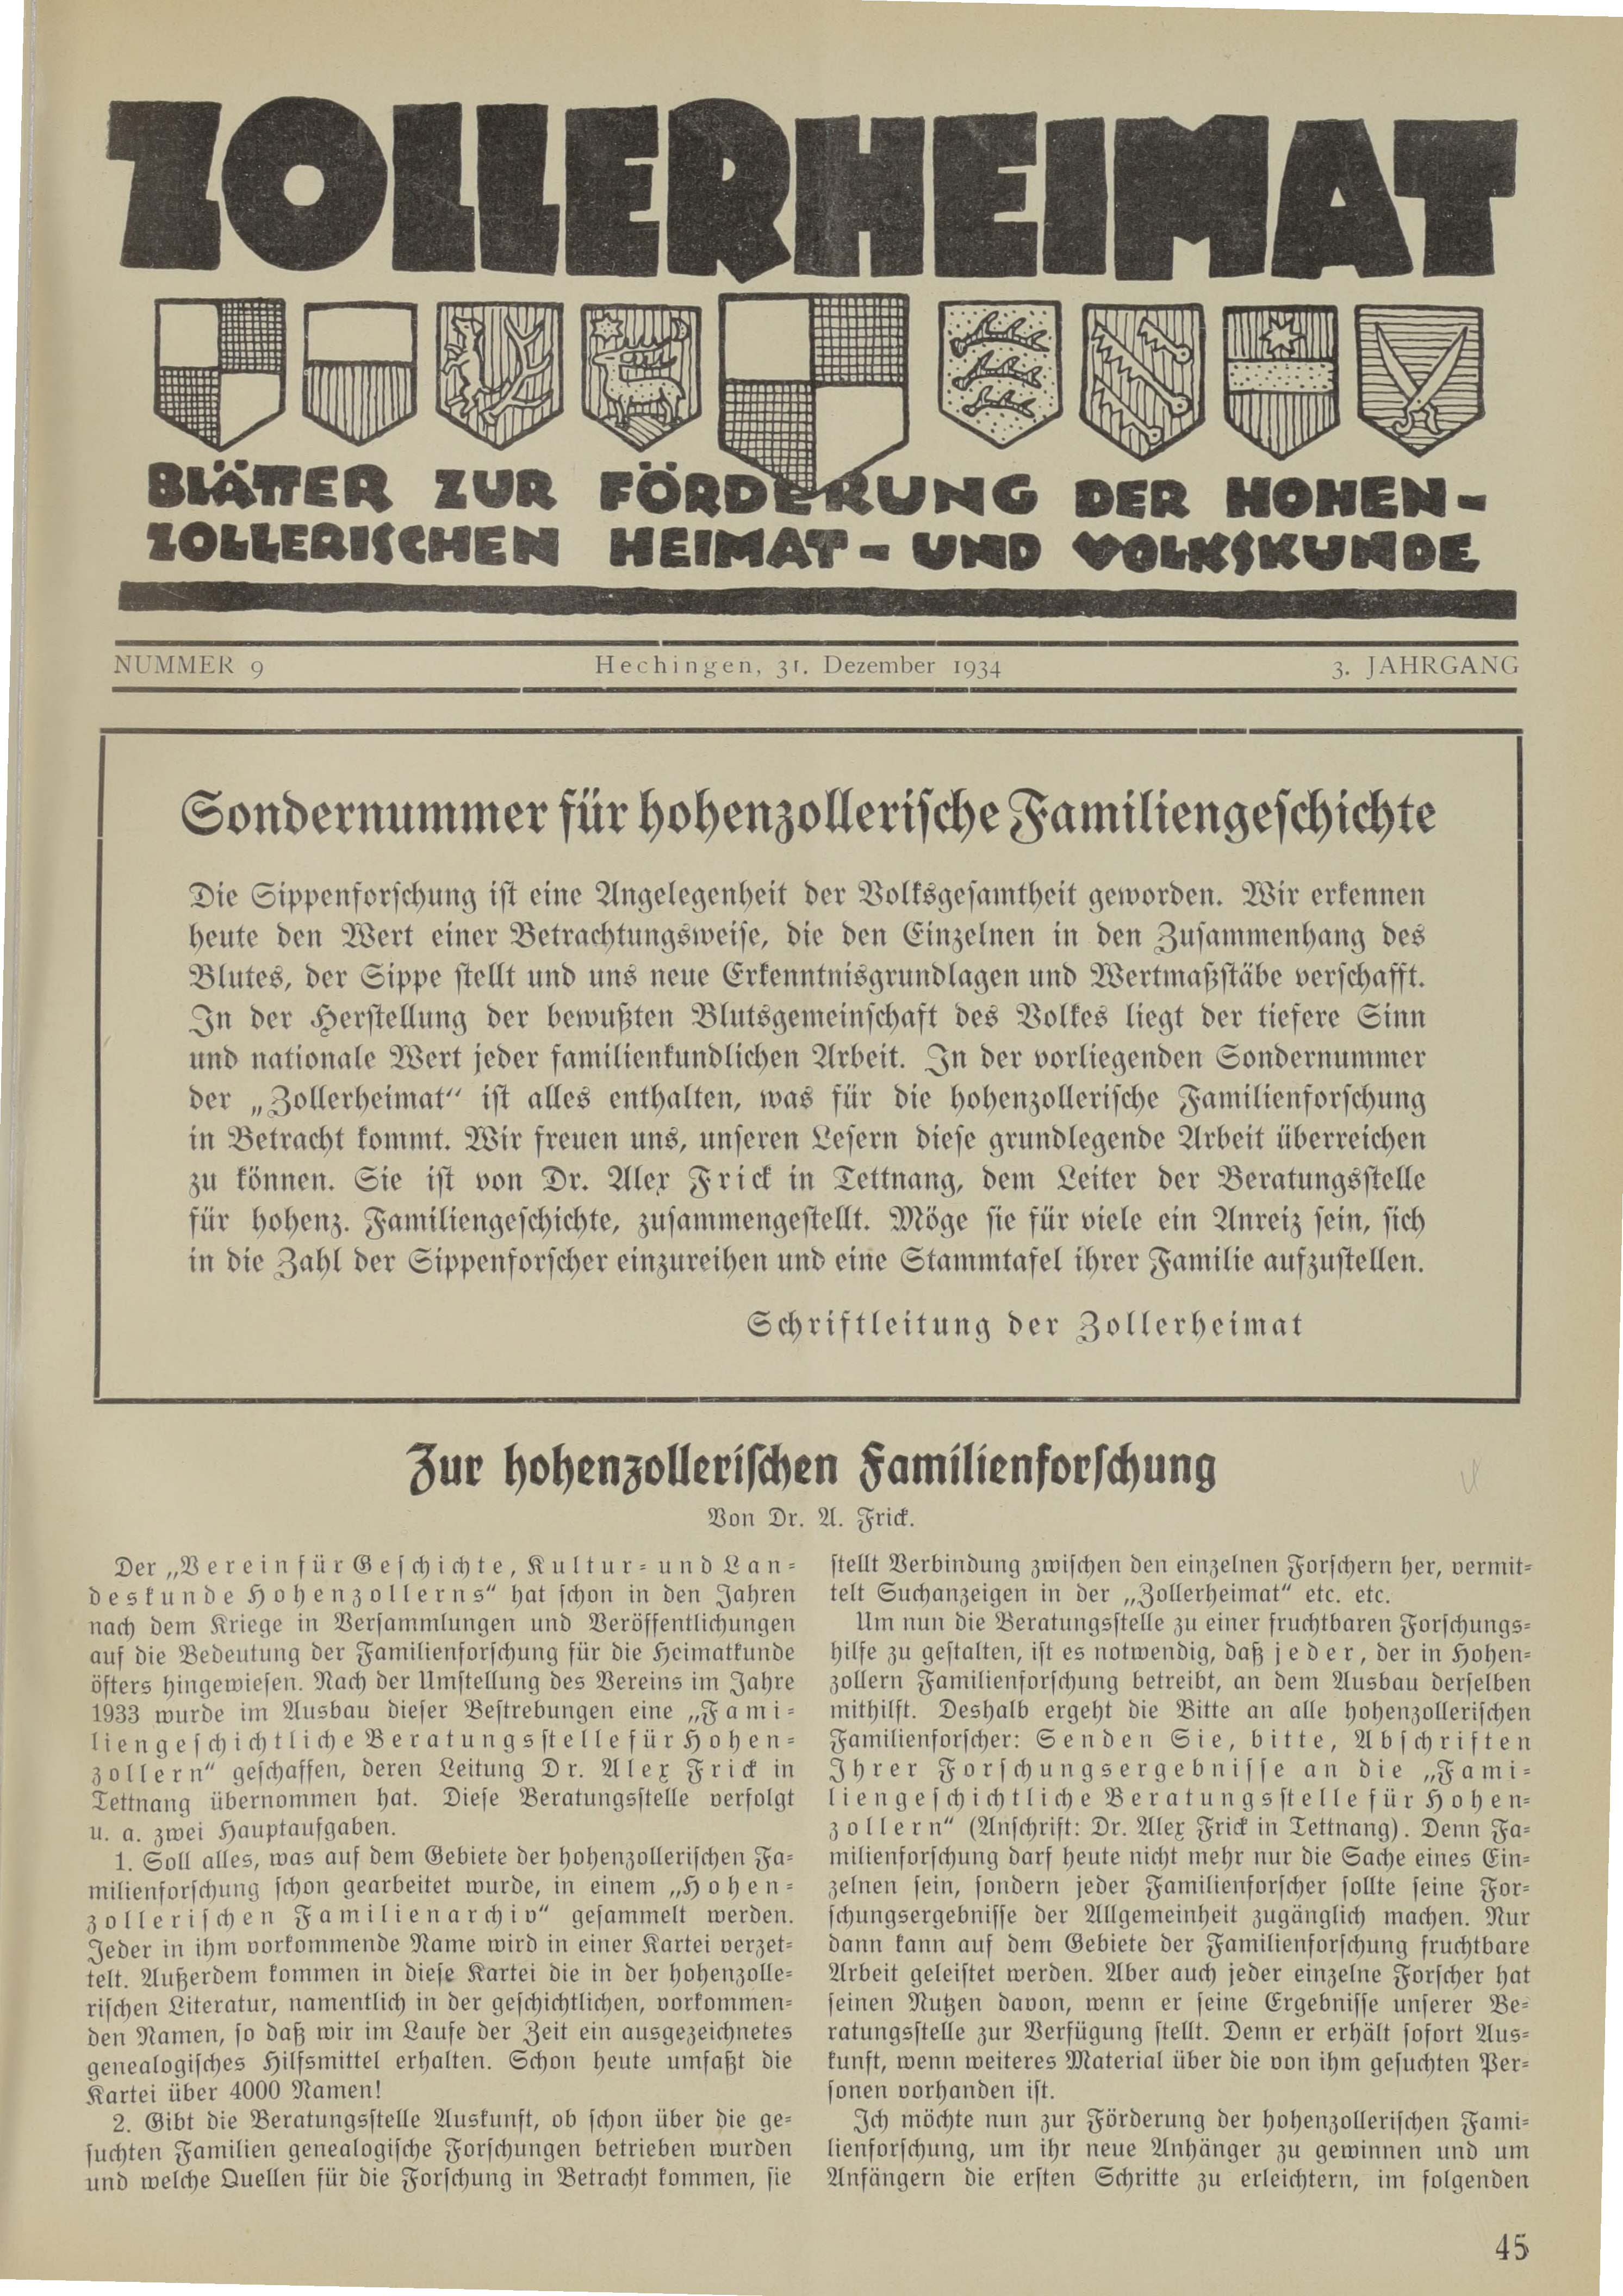                     Ansehen Bd. 3 Nr. 9 (1934): Zollerheimat
                